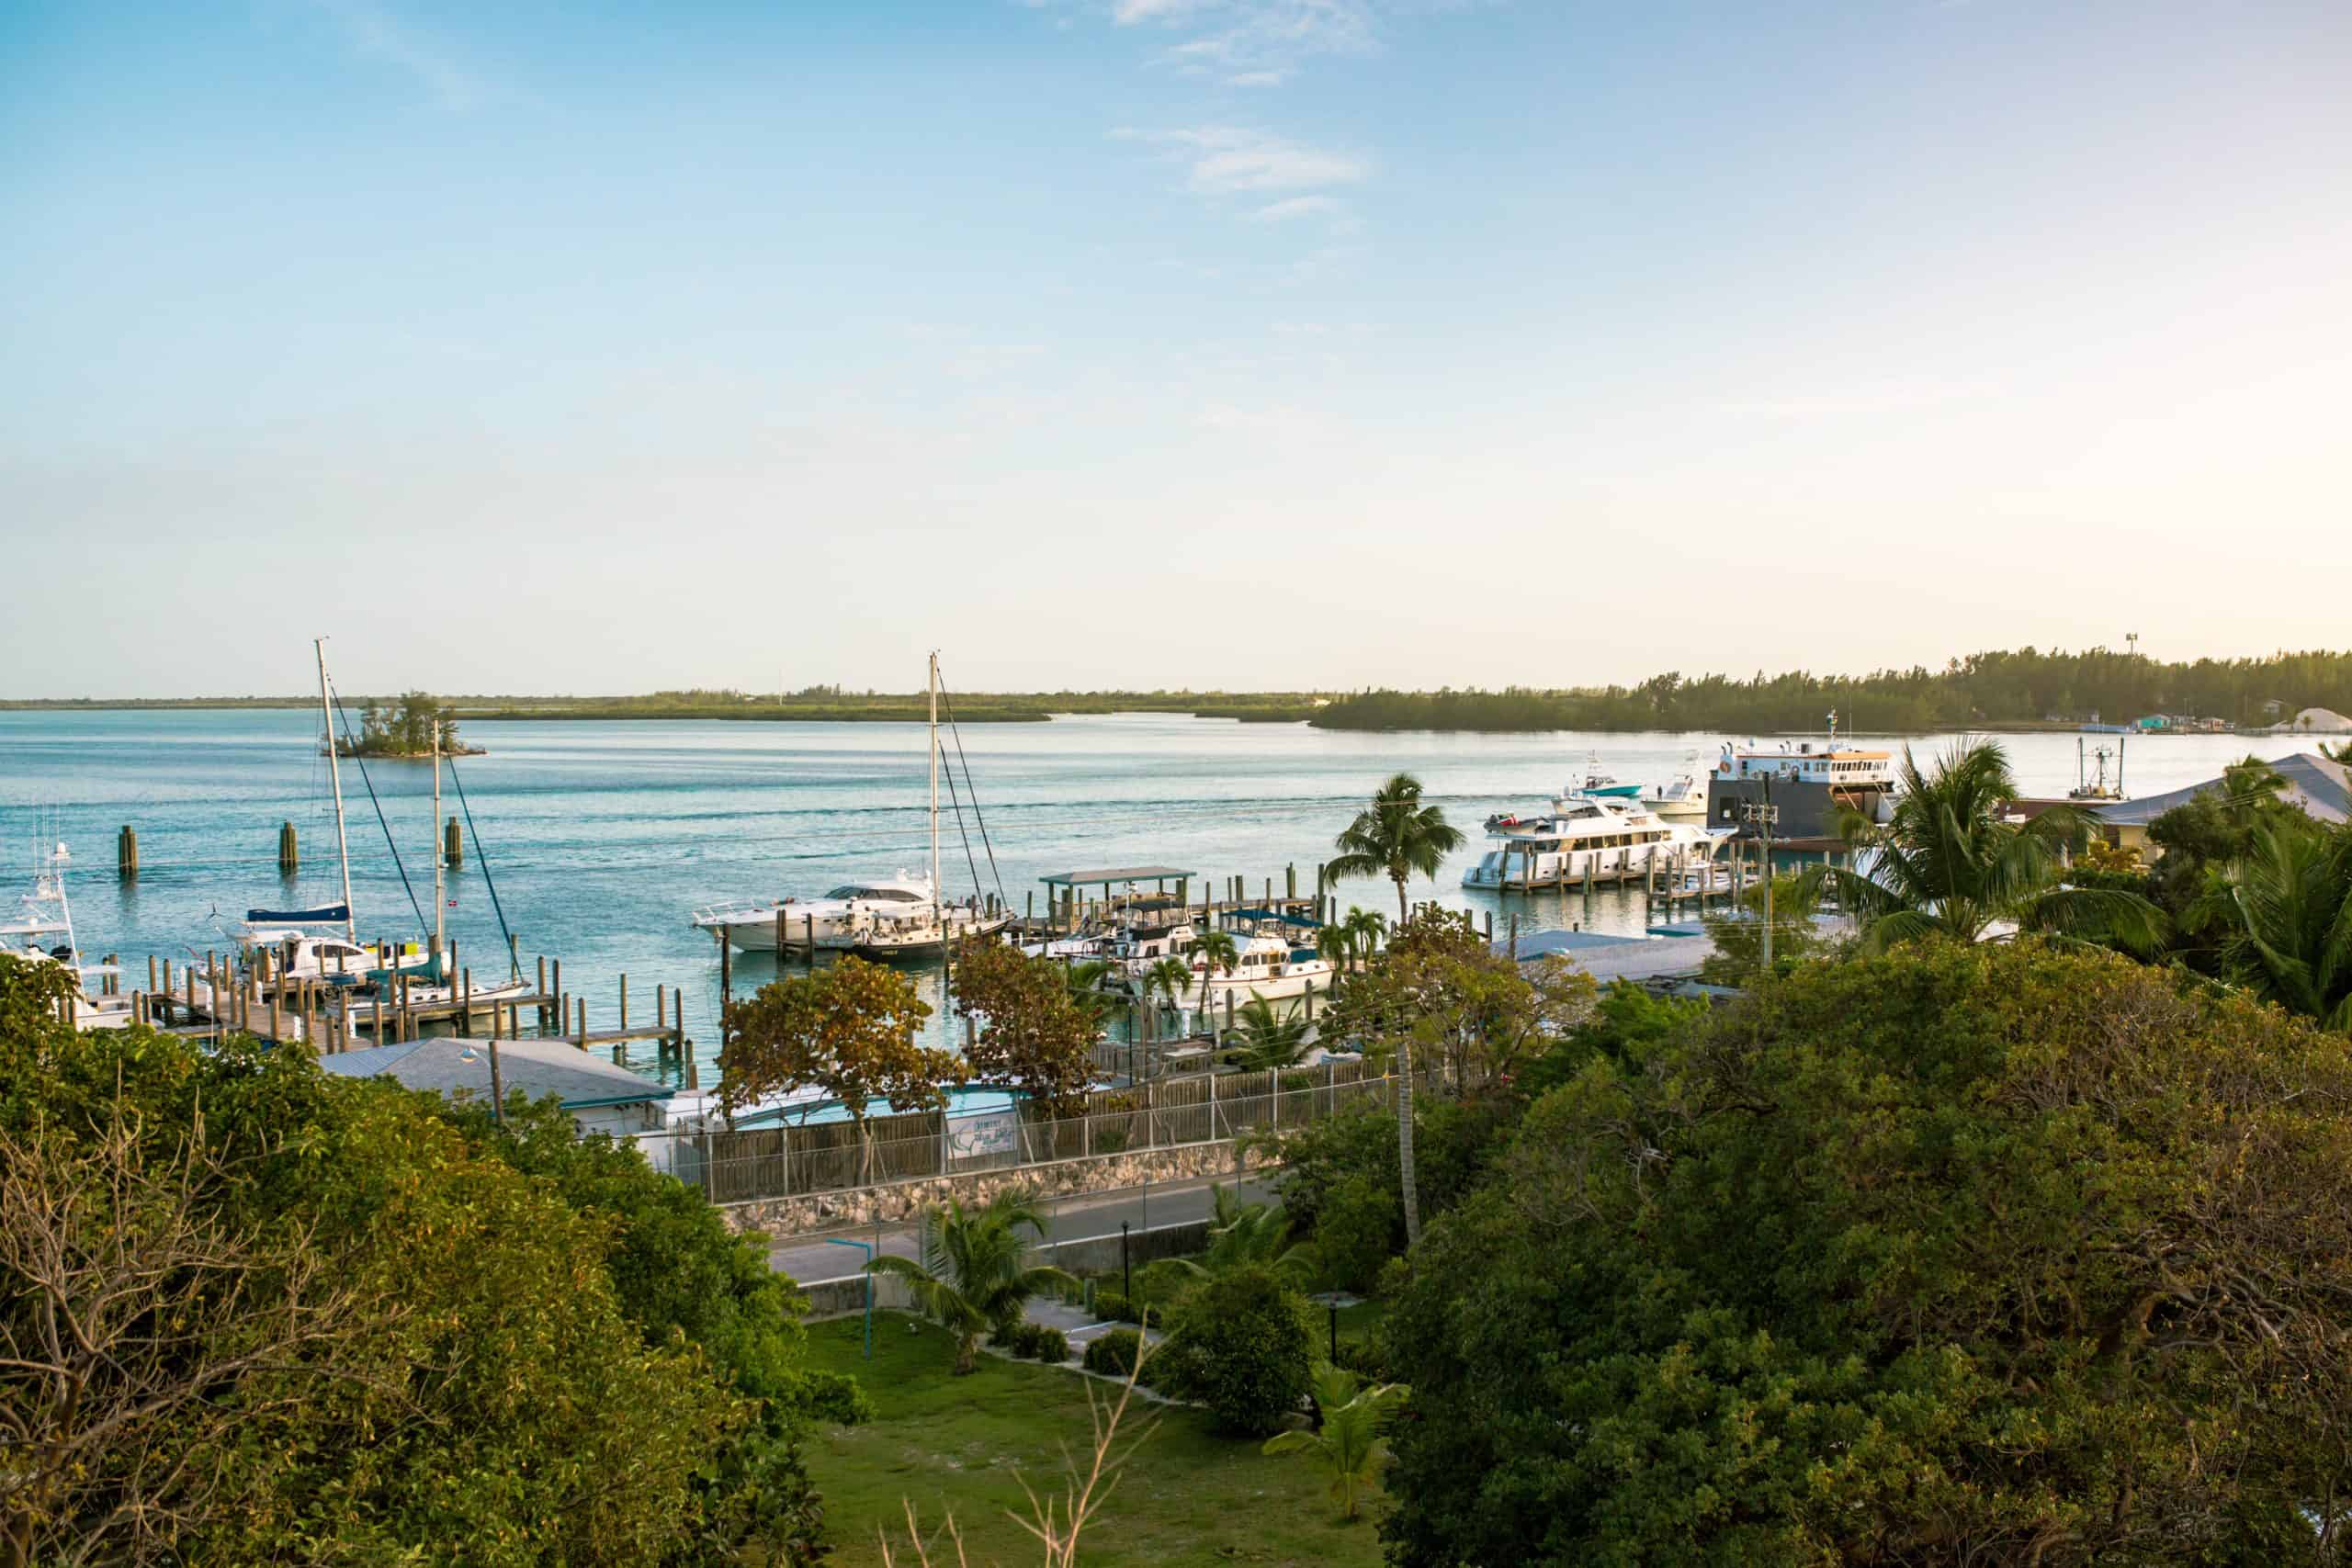 Bimini, The Bahamas